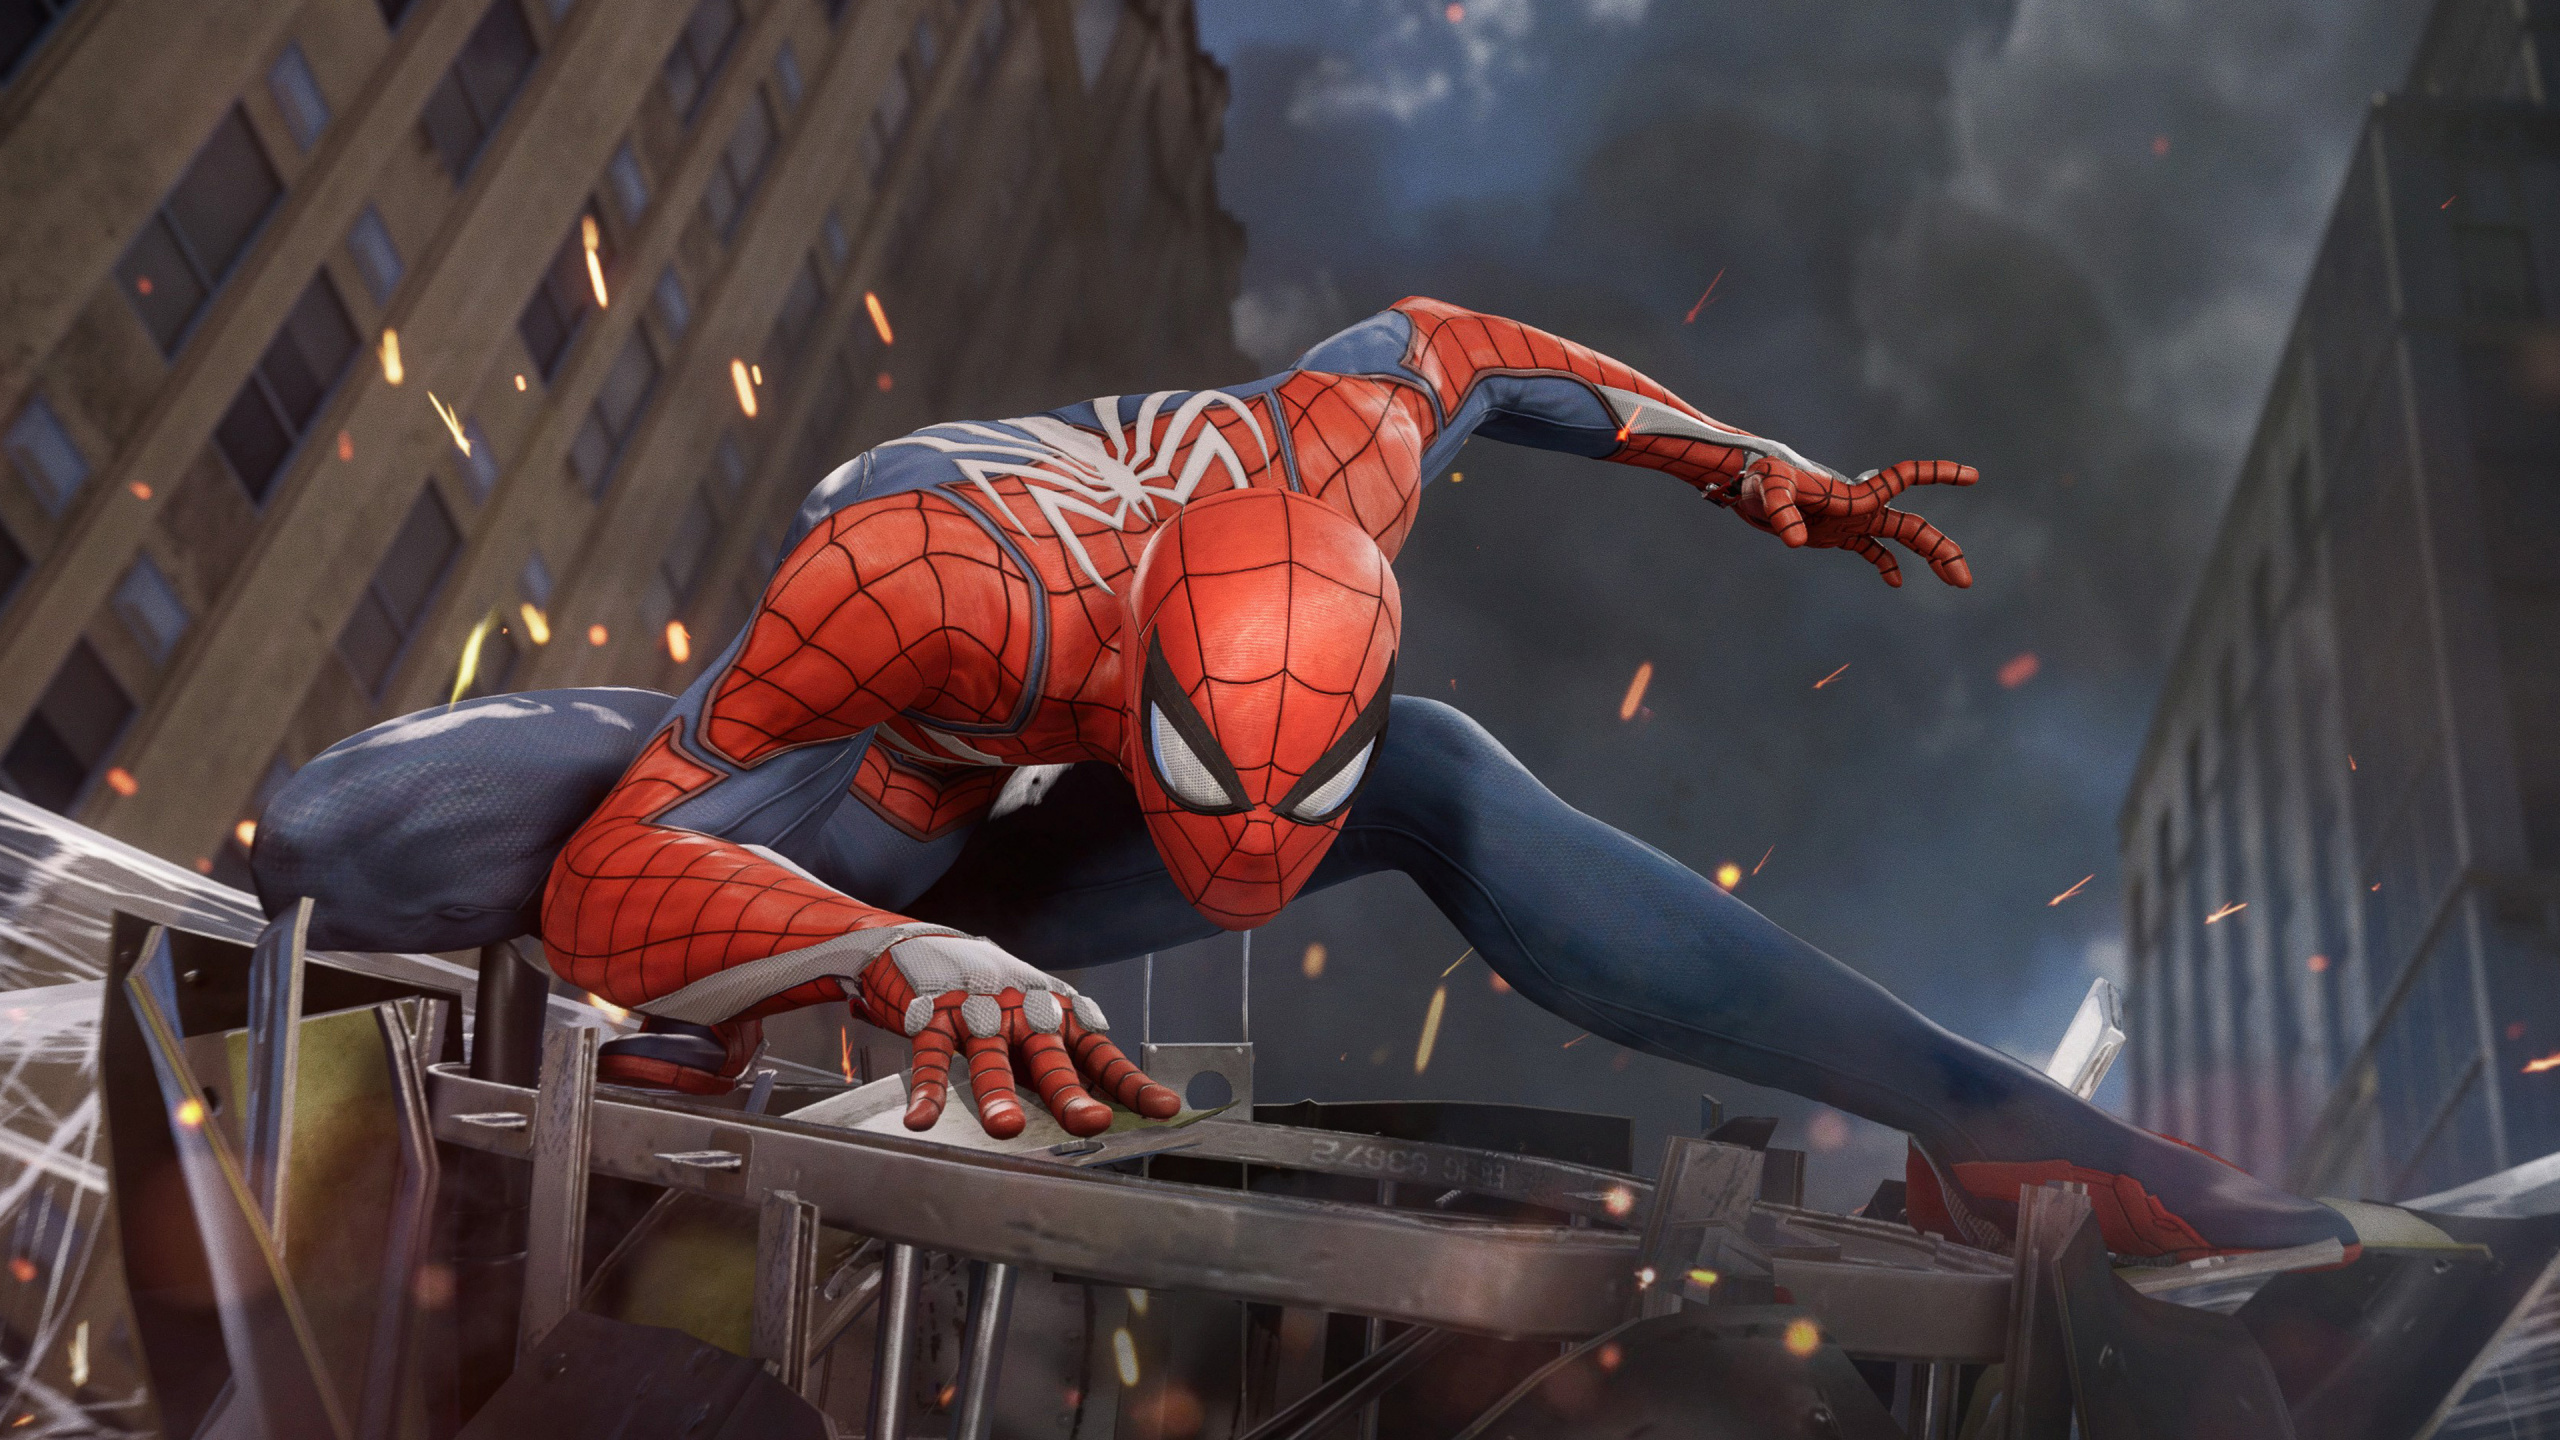 Spider-man, 患有失眠症的游戏, 超级英雄, 性能, 肉体 壁纸 2560x1440 允许